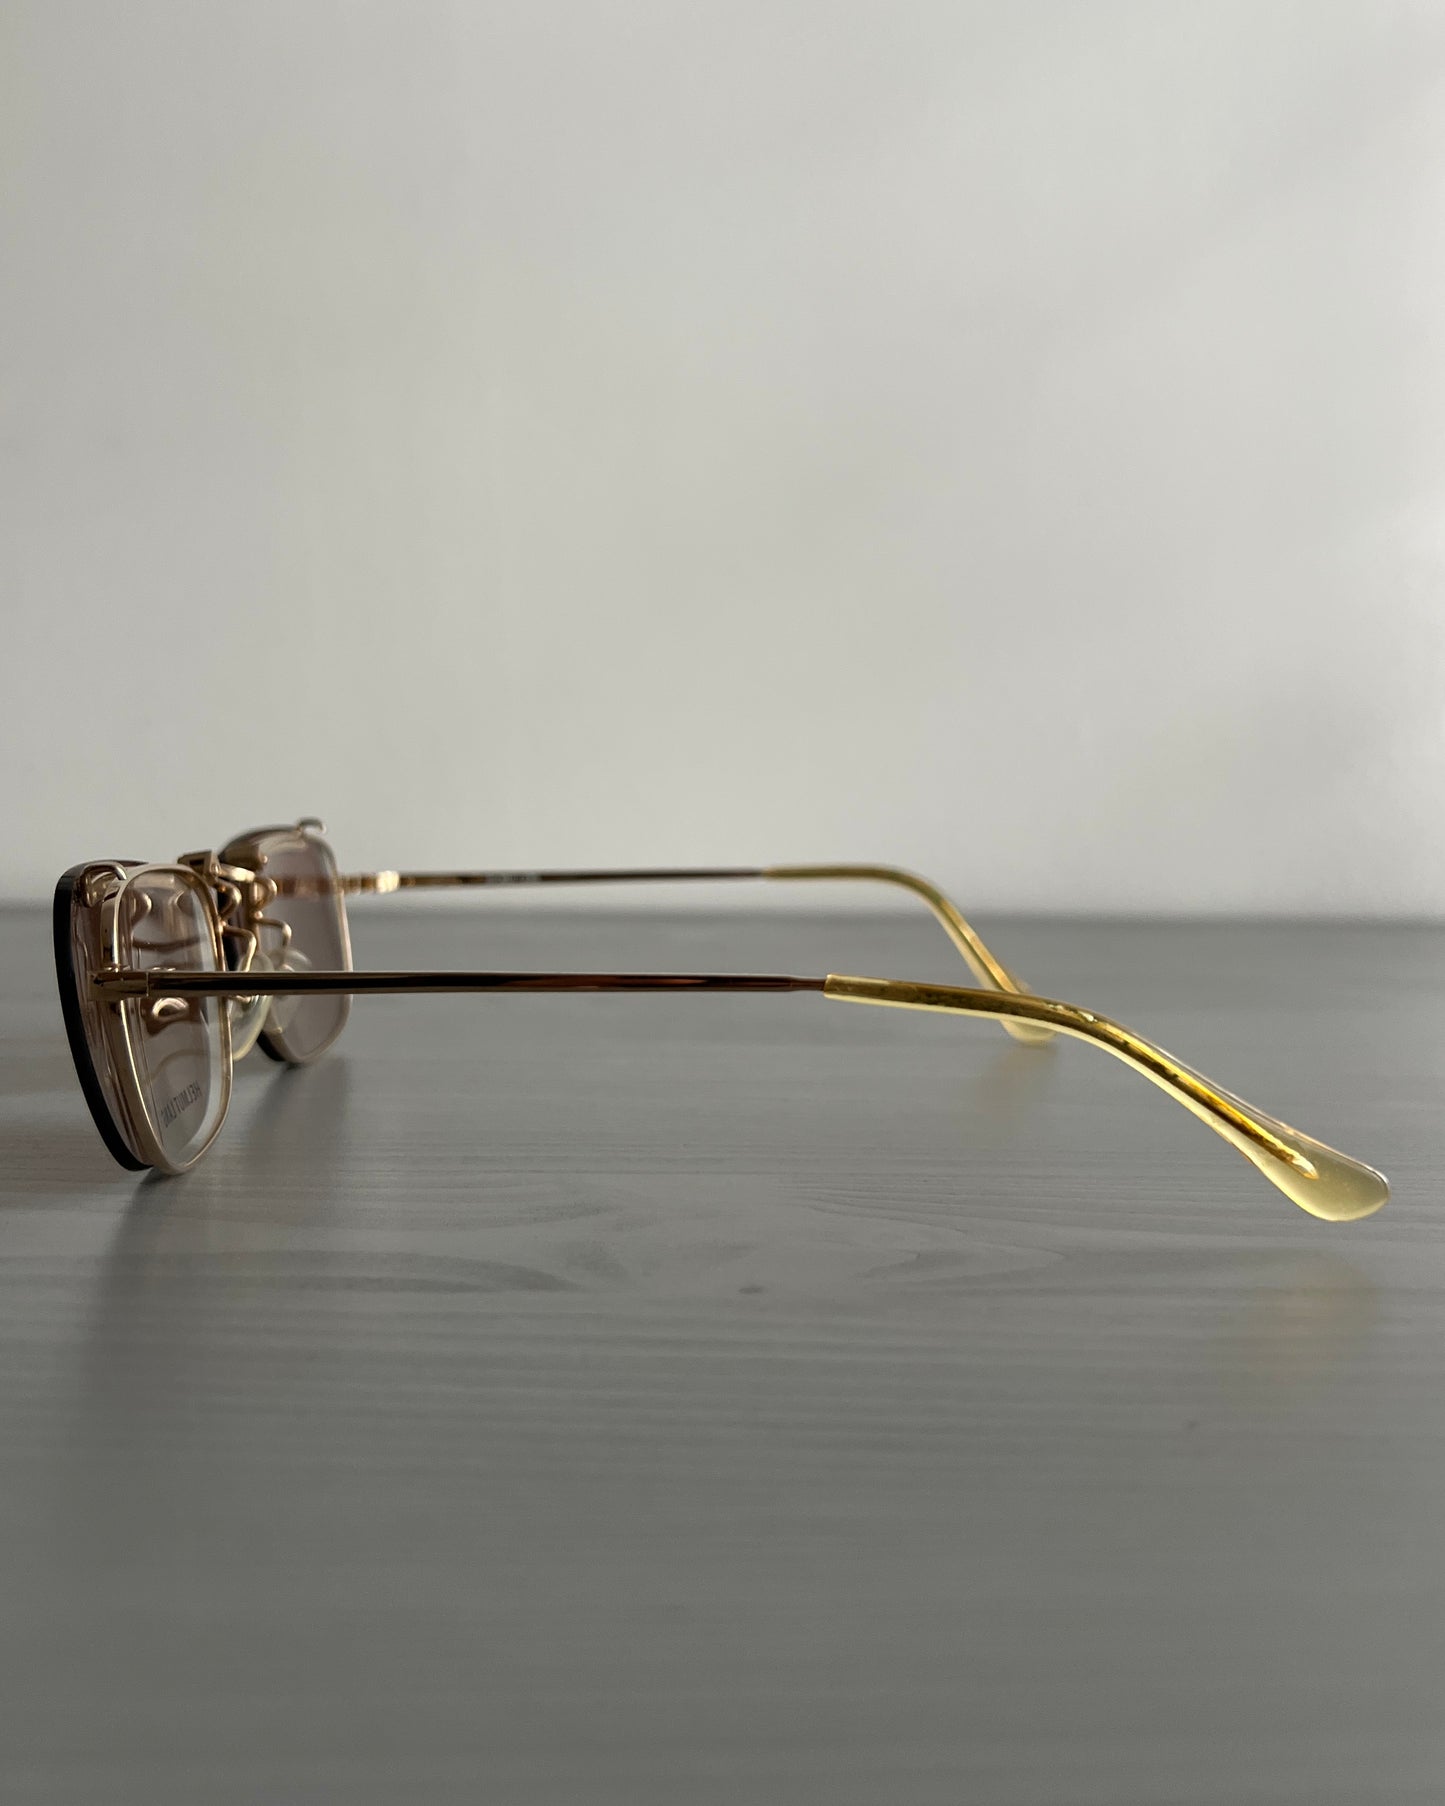 Helmut Lang SS1999 Titanium Double Lens Sunglasses